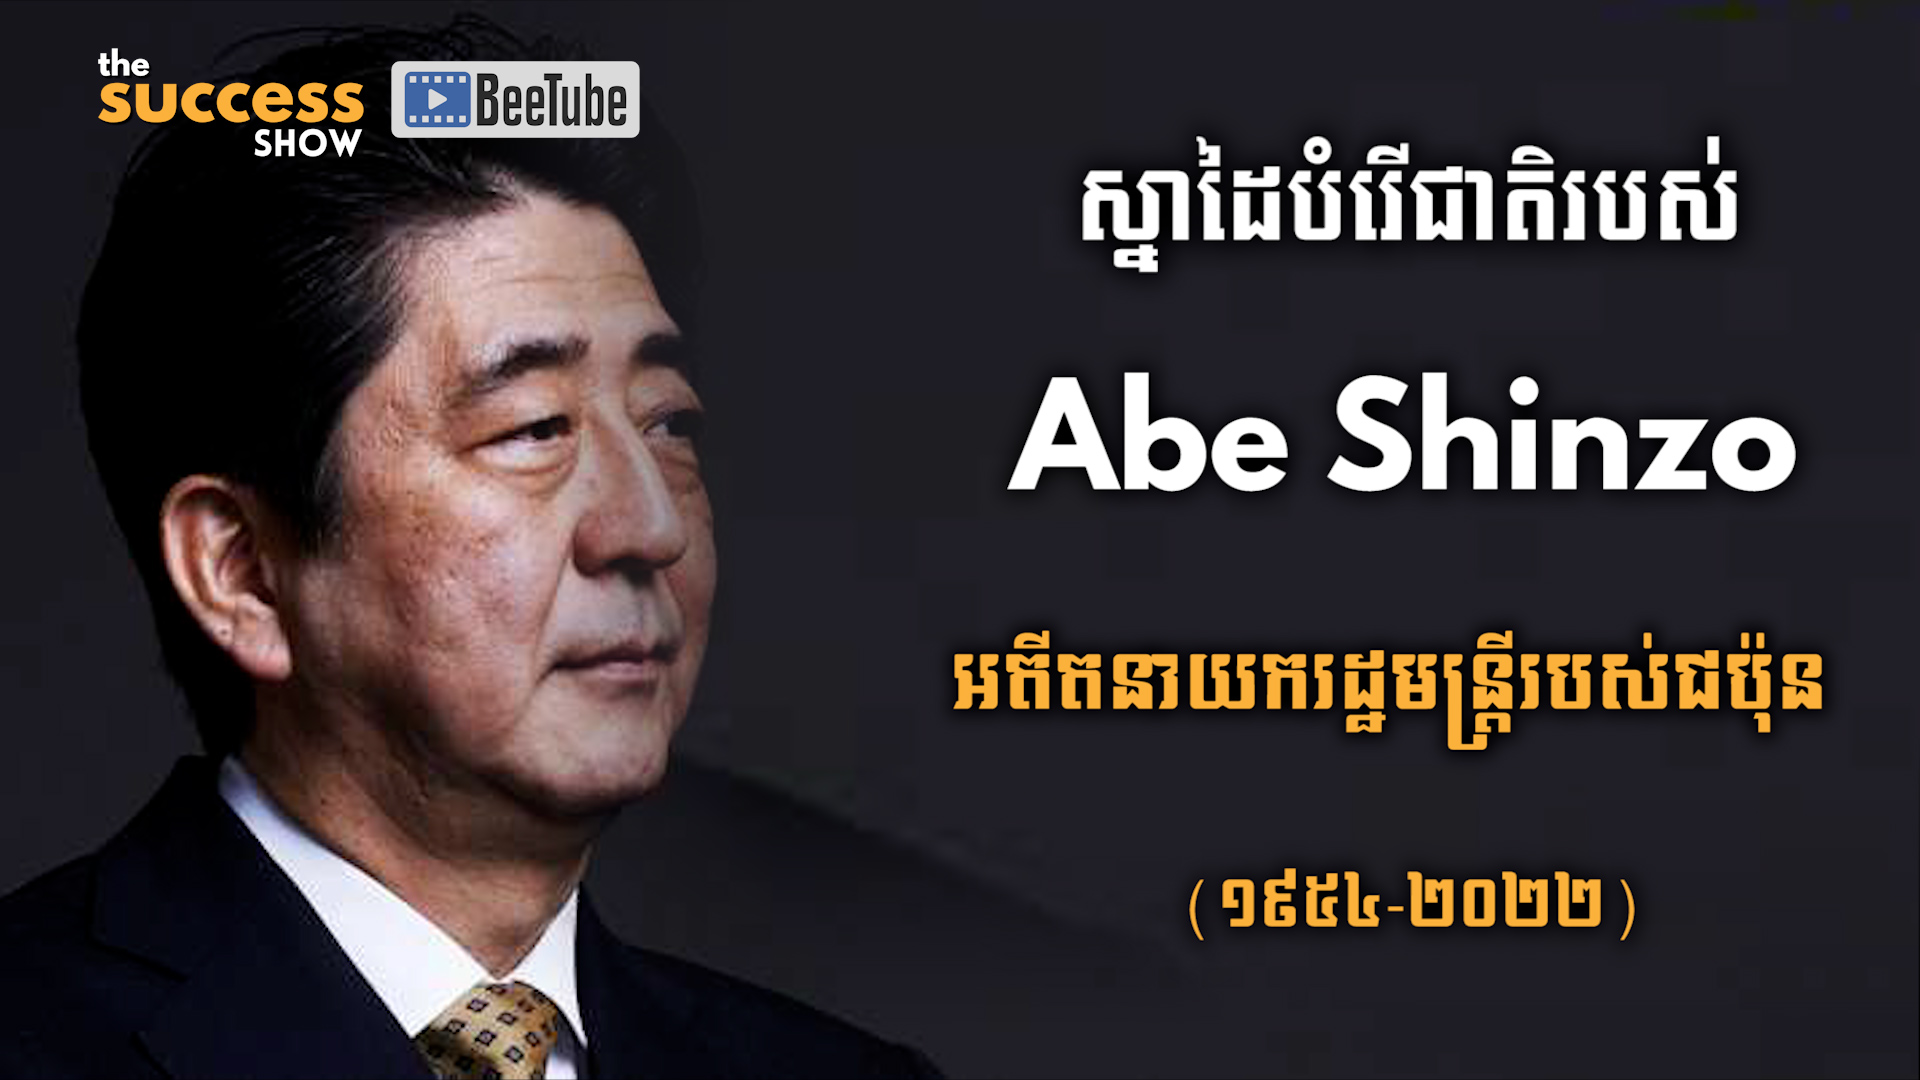 ស្នាដៃបំរើជាតិរបស់ Abe Shinzo (អាបិ ស៊ិនសូ) អតីតនាយករដ្ឋមន្រ្តីរបស់ជប៉ុន (1954-2022)